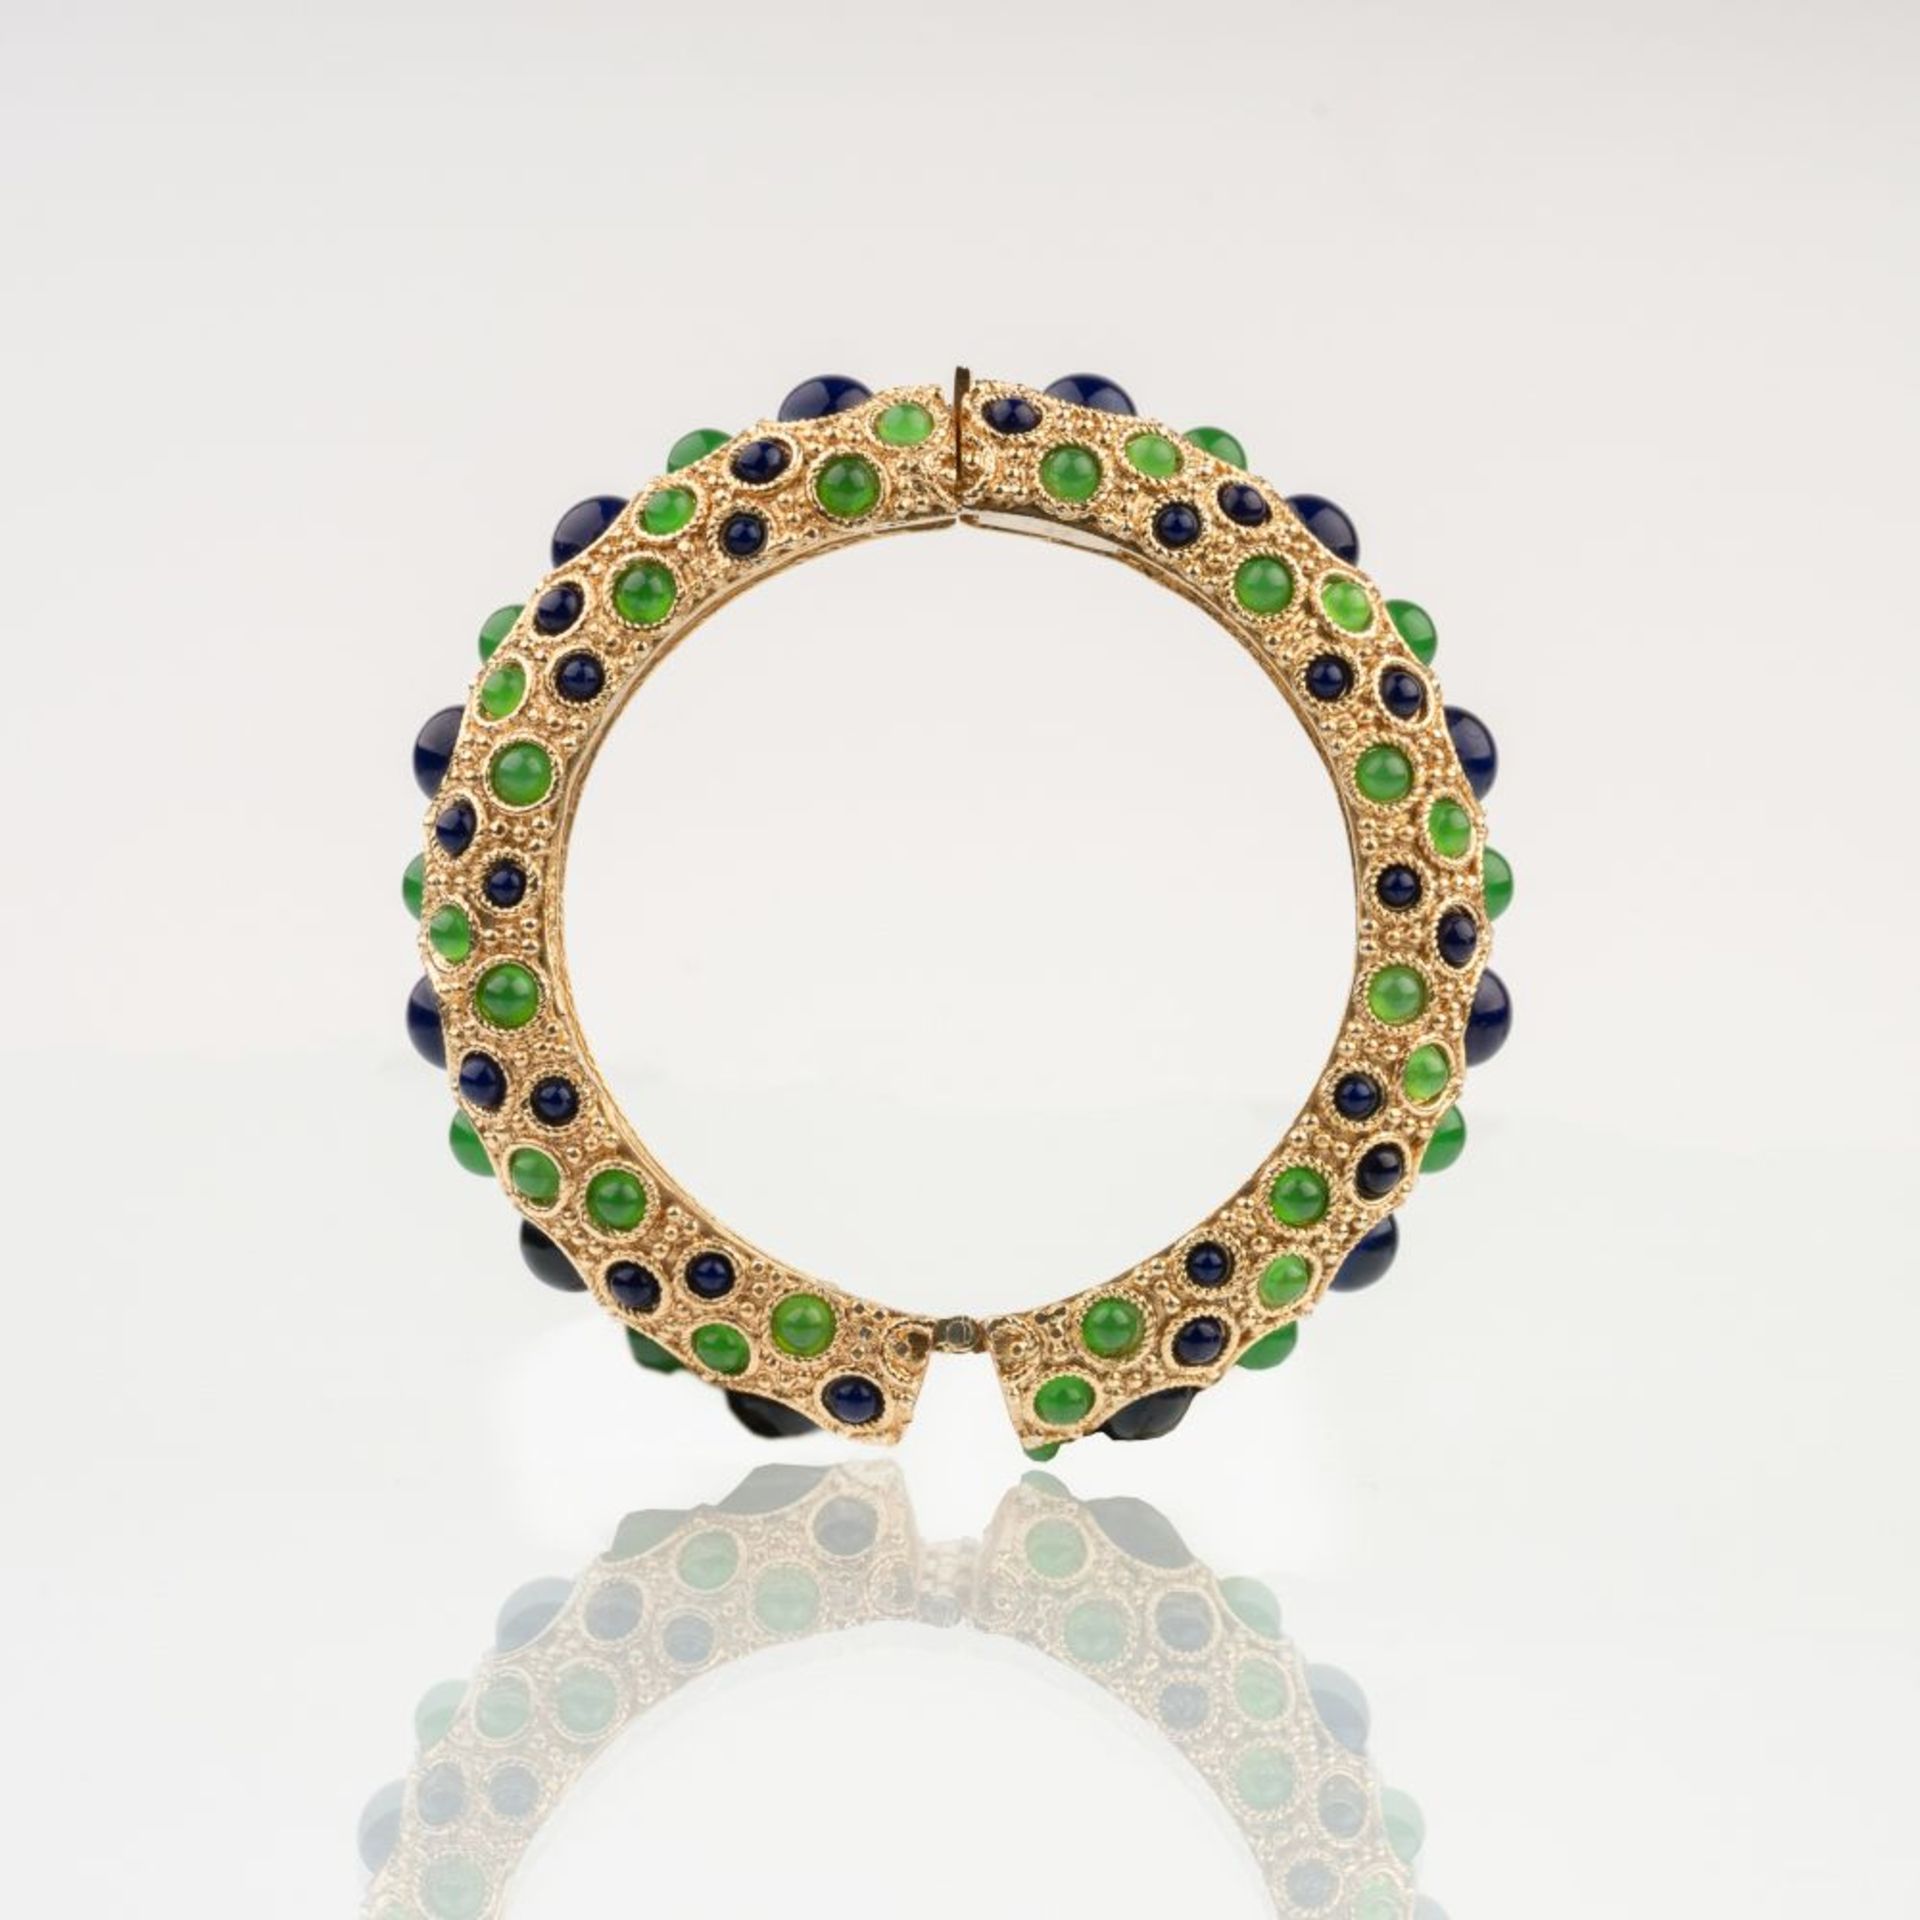 Dior, Christian. A Vintage Bangle Bracelet. - Image 2 of 2